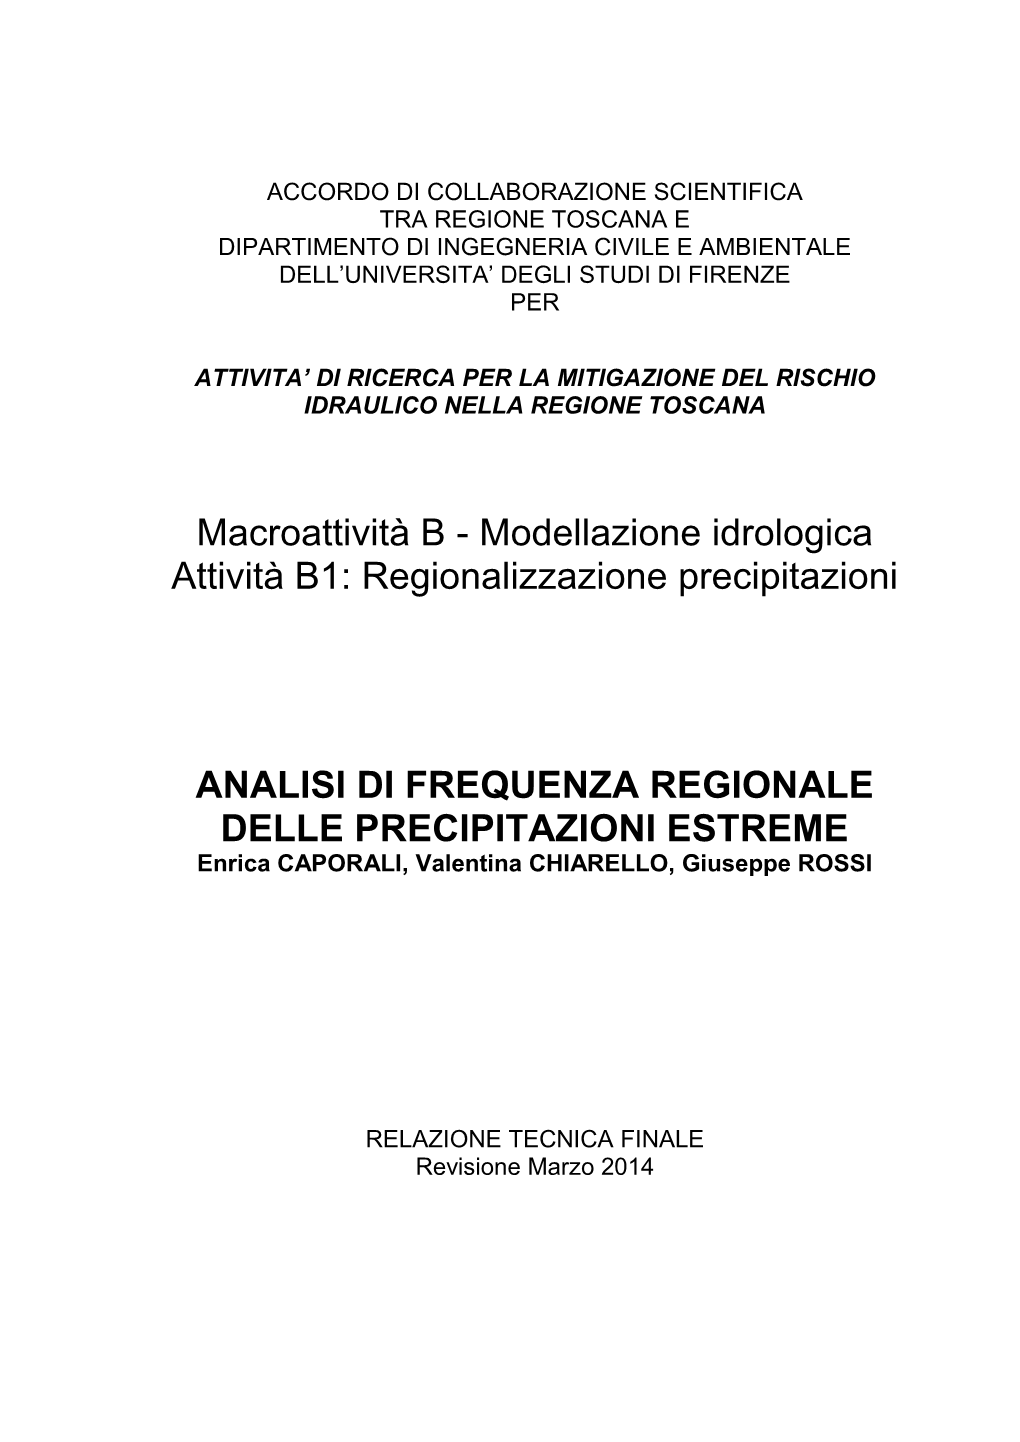 Modellazione Idrologica Attività B1: Regionalizzazione Precipitazioni